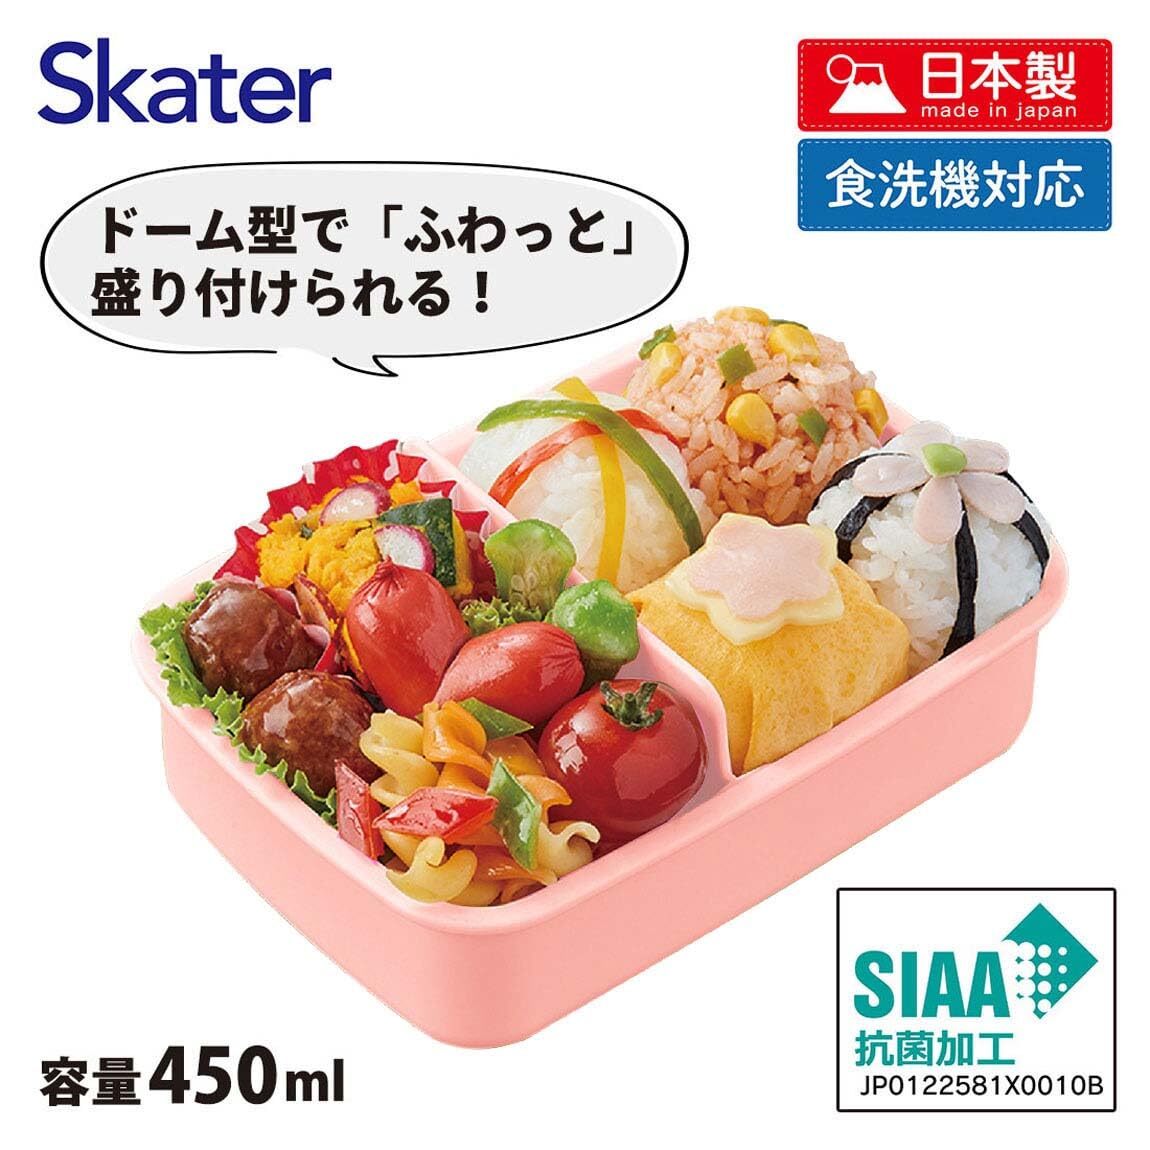 スケーター(Skater) 子供用 お弁当箱 1段 450ml ふわっと盛れるドーム型 スヌーピー 80s カフェ 抗菌 子供用 日本製 RBF_画像4